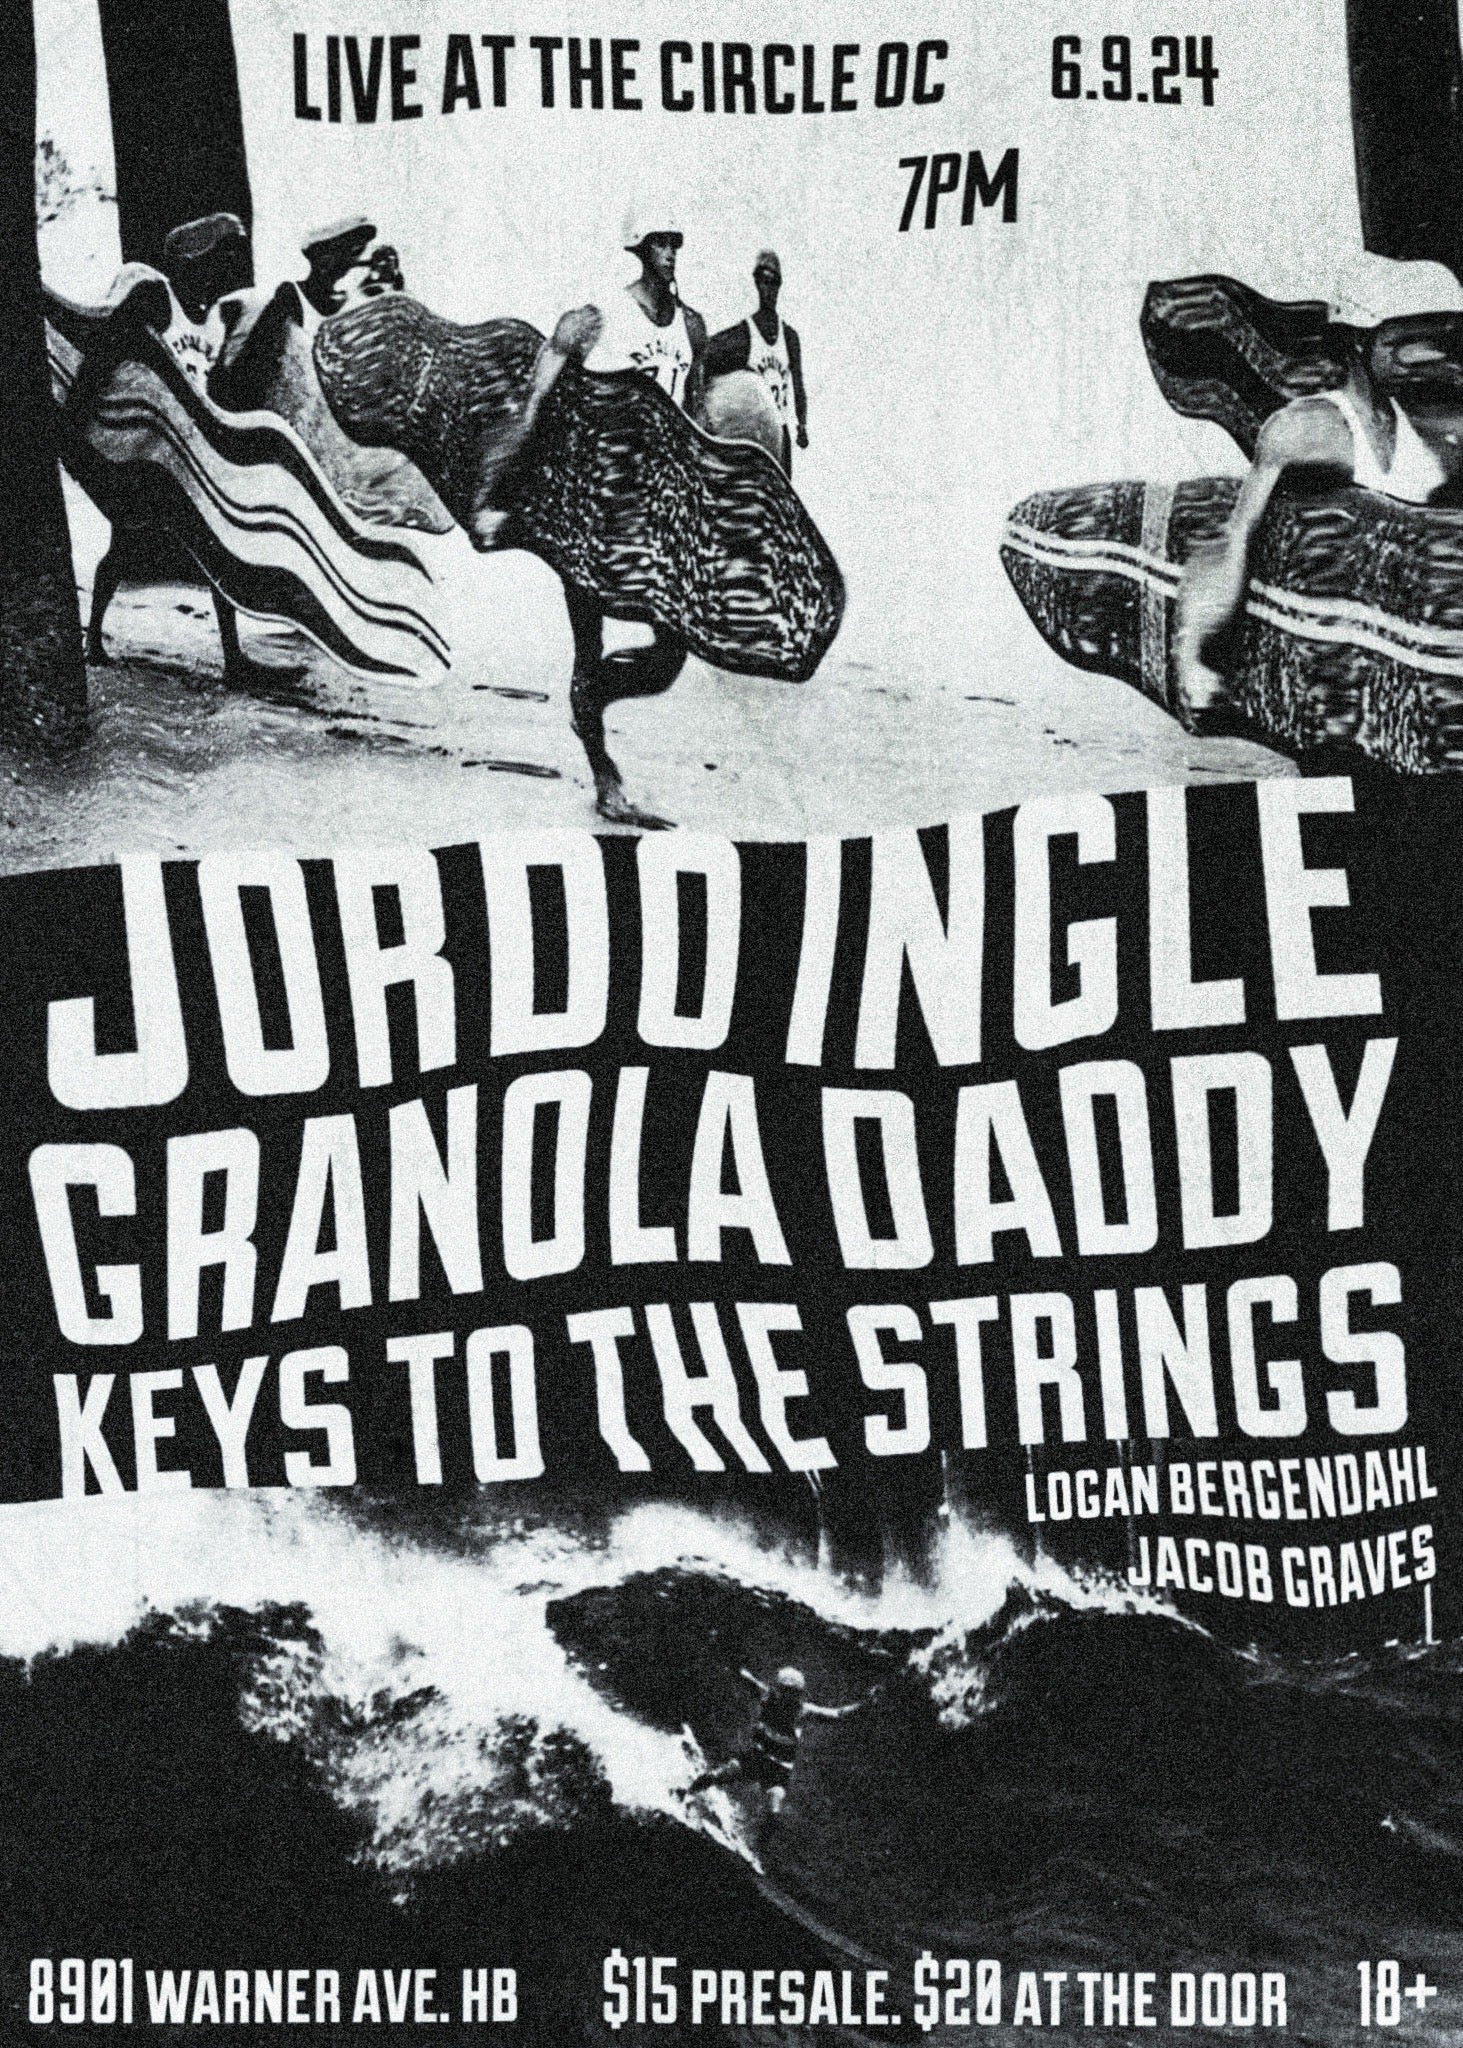 Jordo Ingle, Granola Daddy, Keys To The Strings